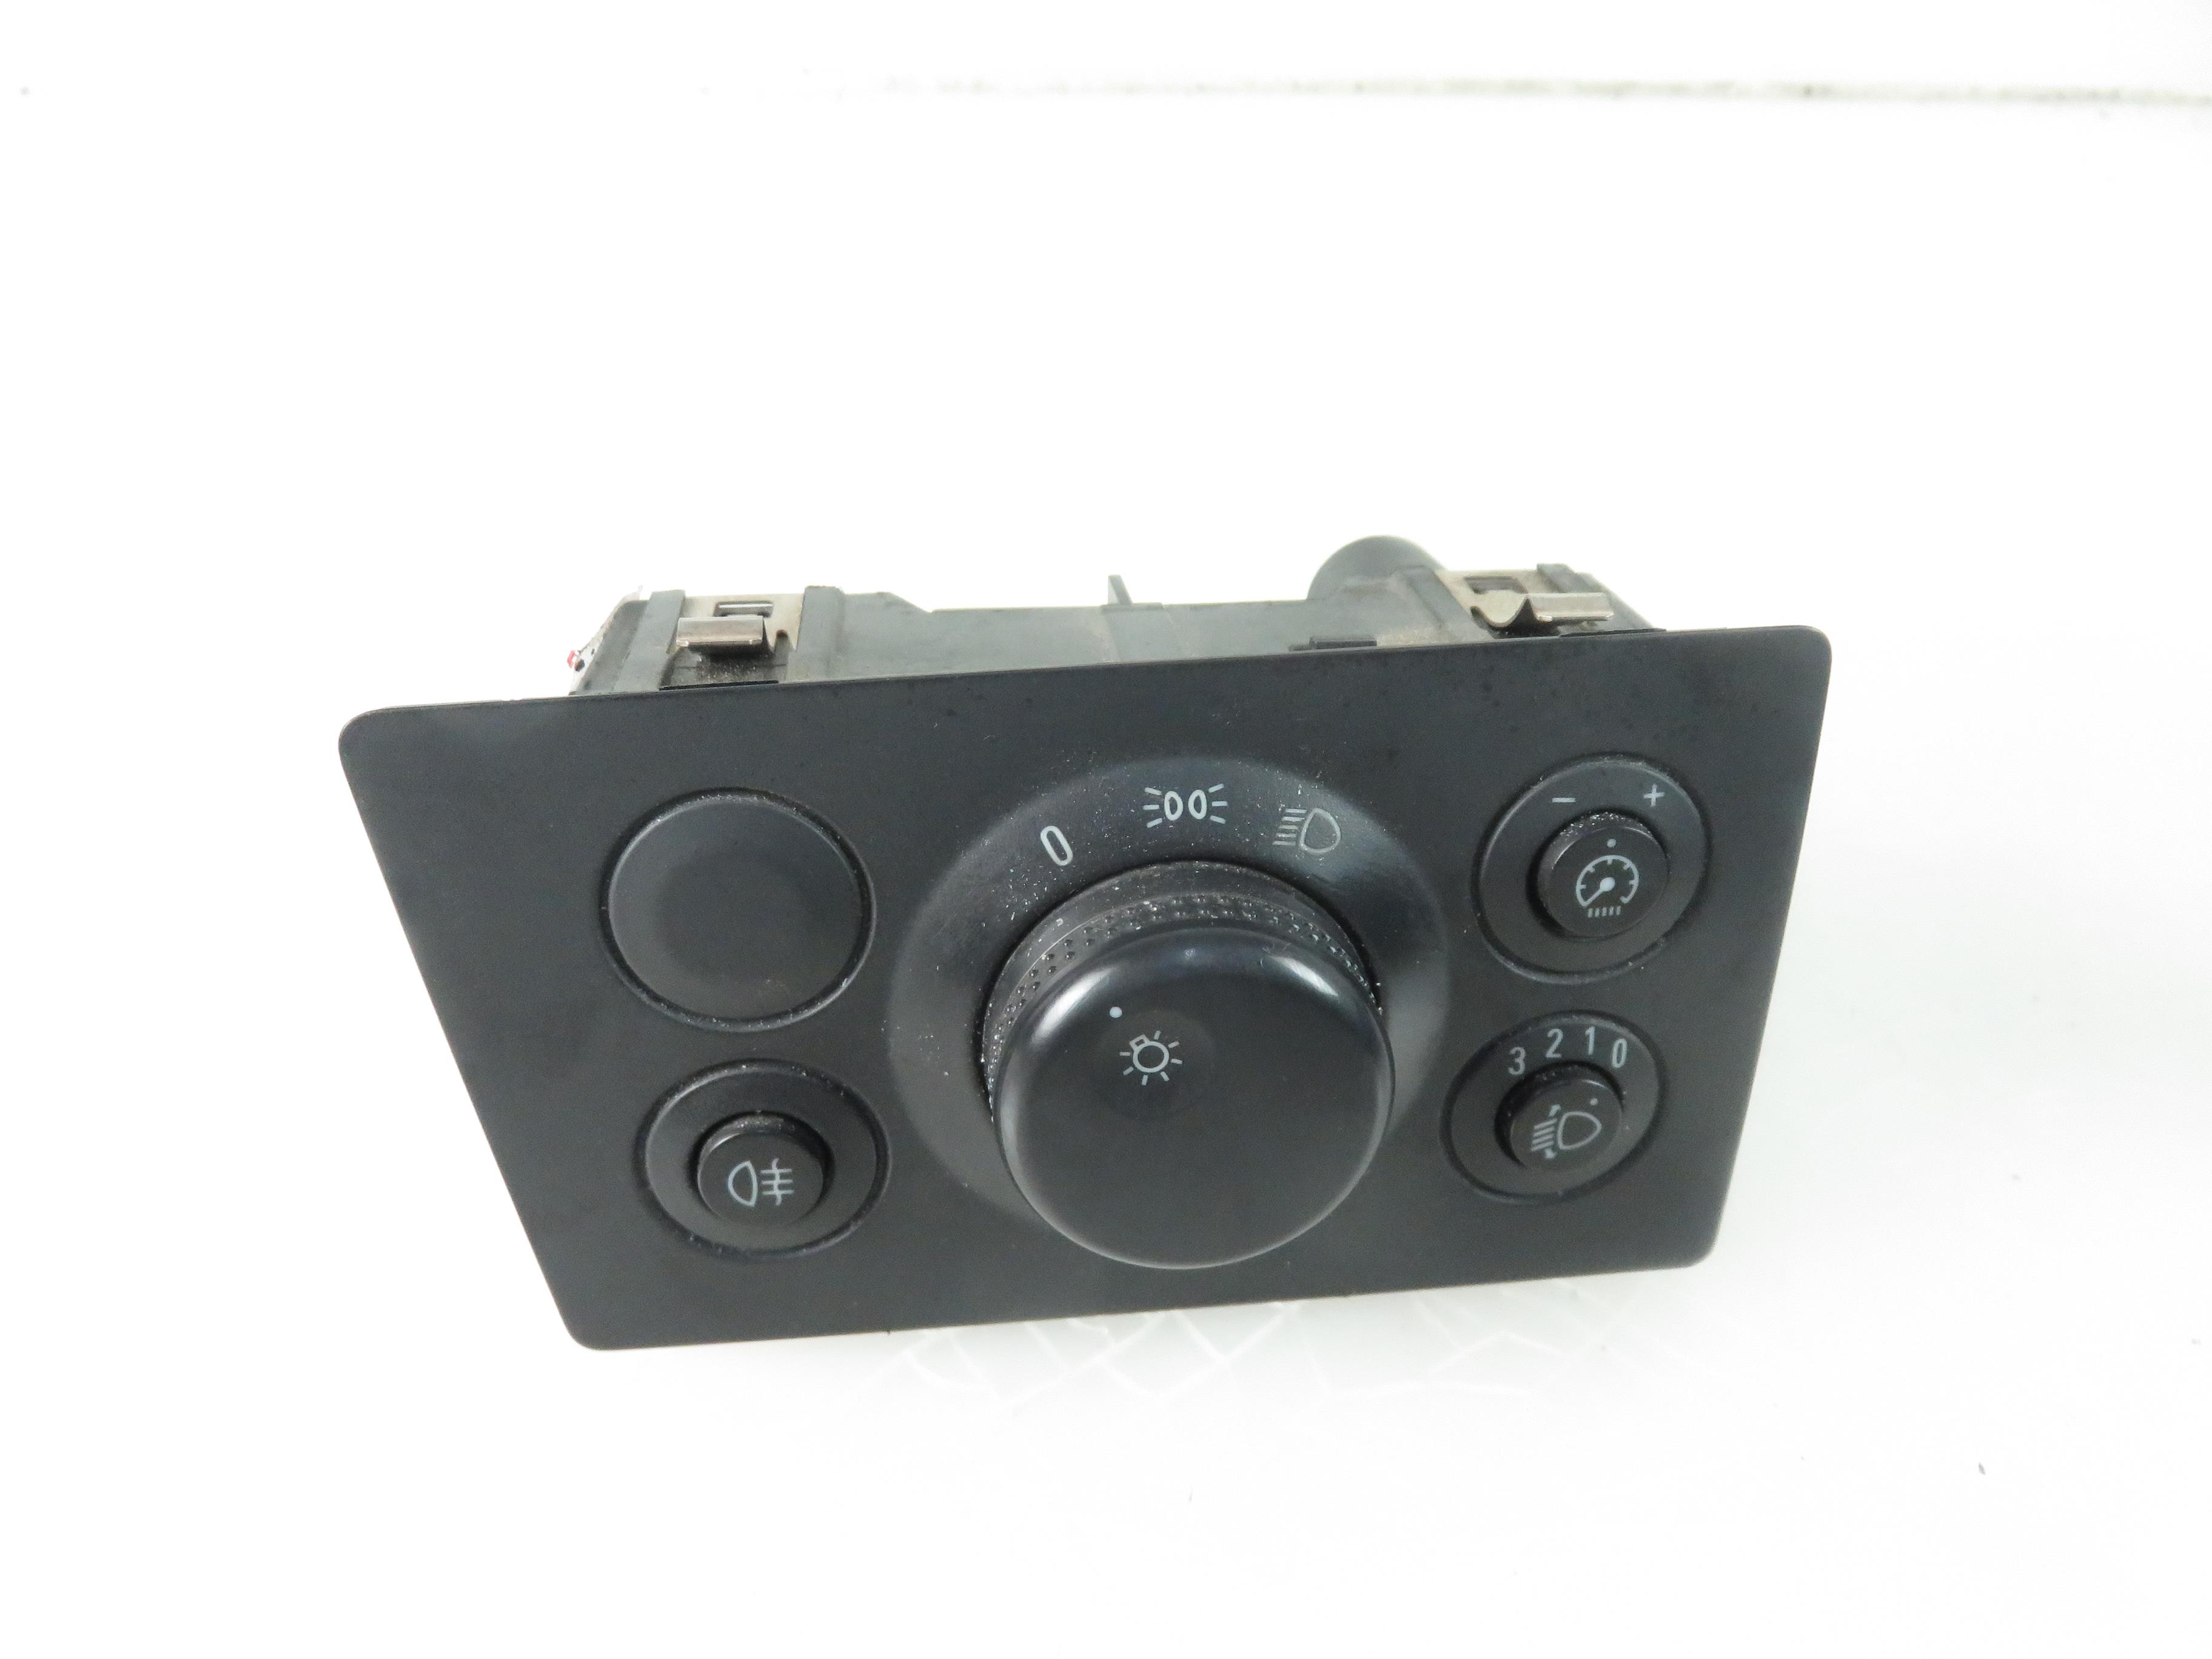 OPEL Zafira B (2005-2010) Headlight Switch Control Unit 13205863 17785587